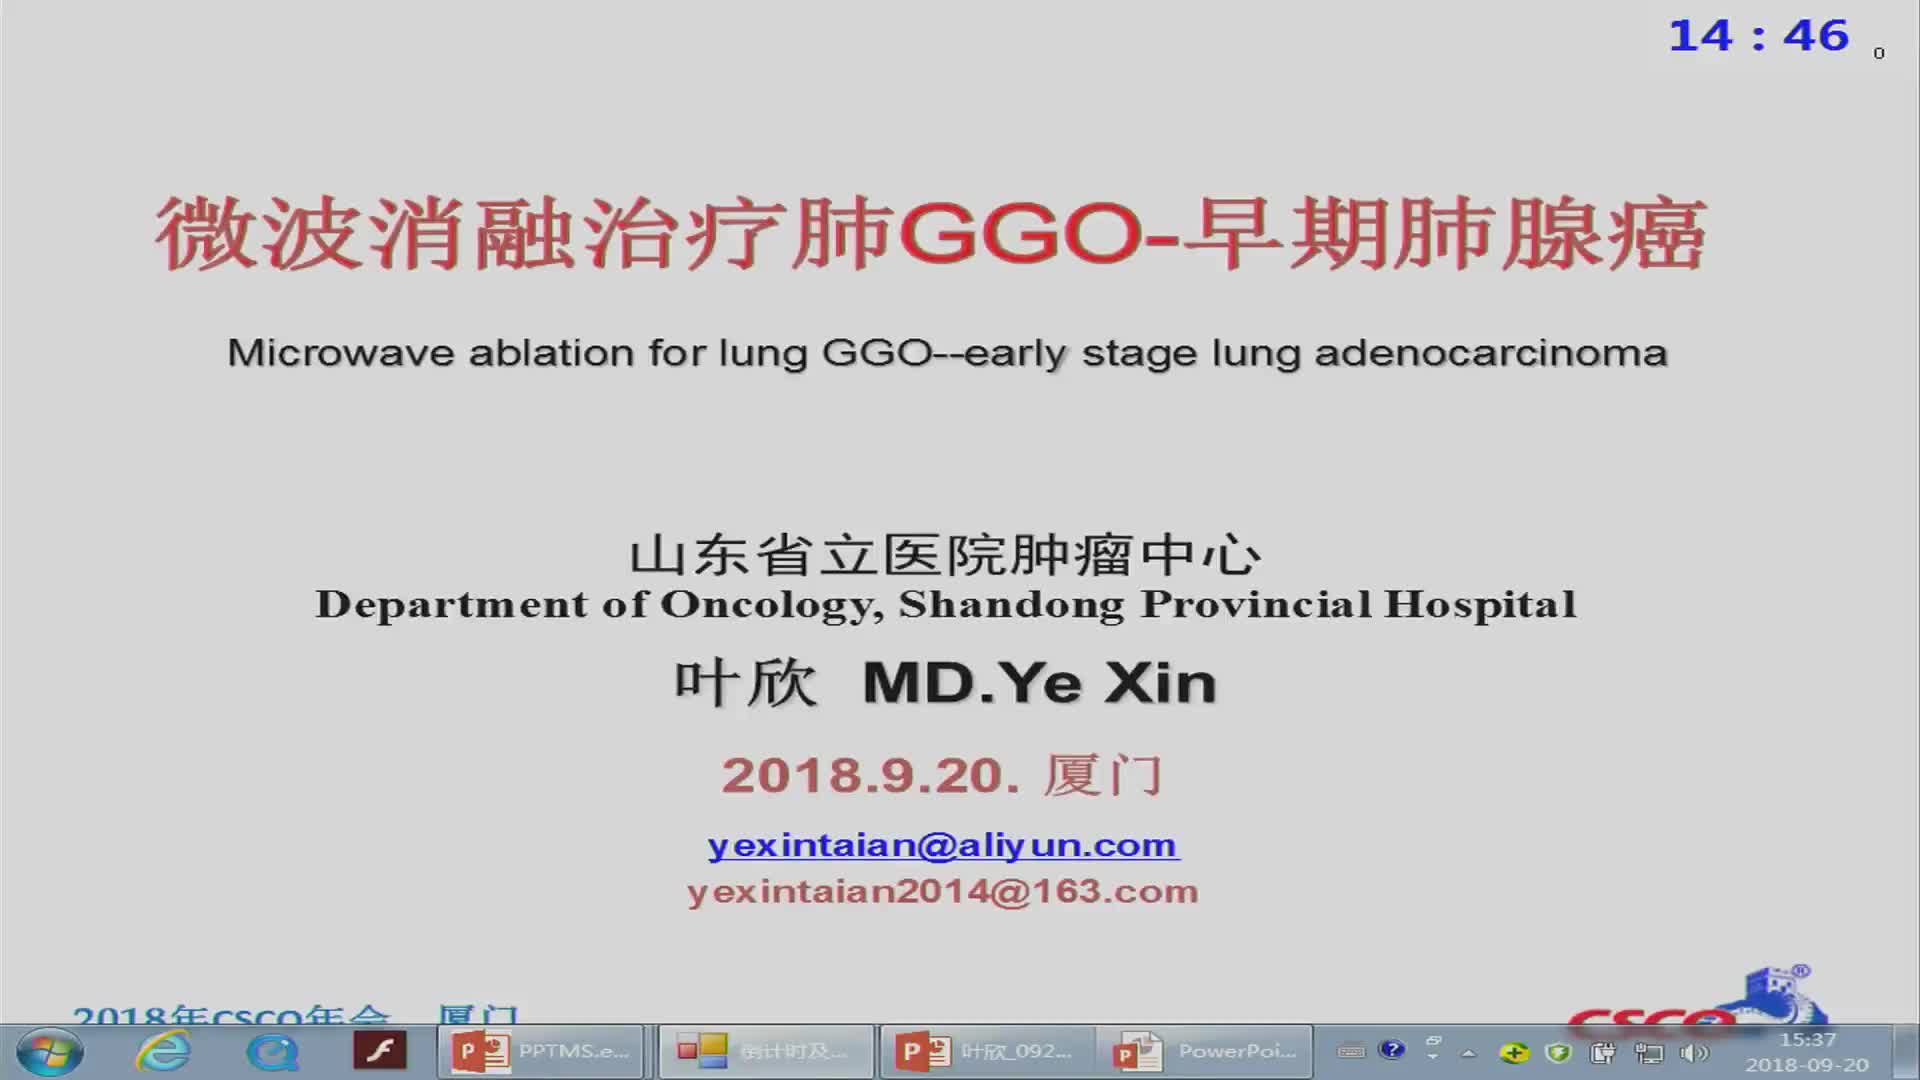 微波消融治疗GGO-早期肺腺癌